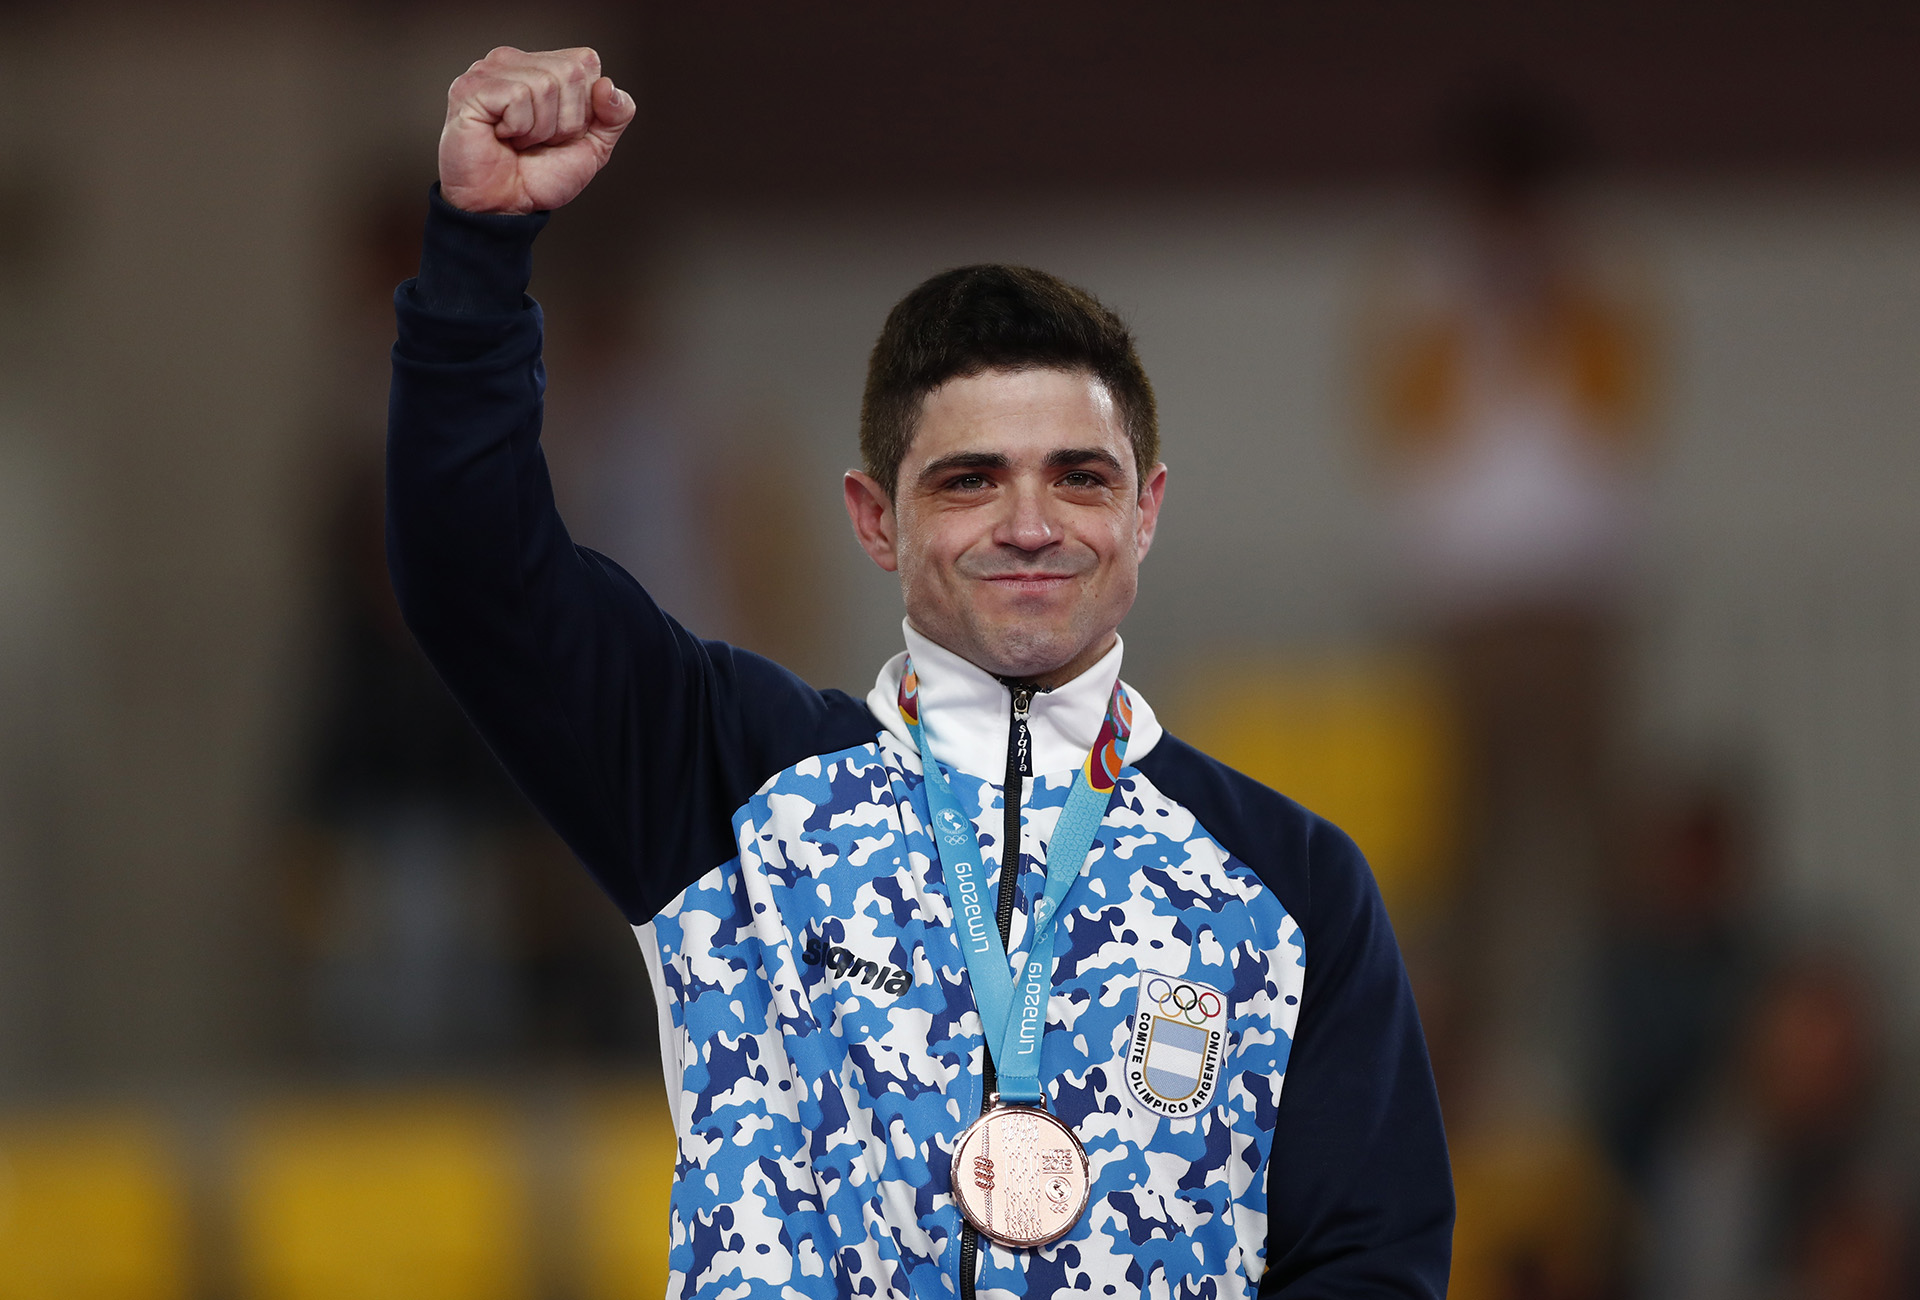 Molinari en el podio de los Juegos Panamericanos Lima 2019 (EUTERS/Susana Vera)